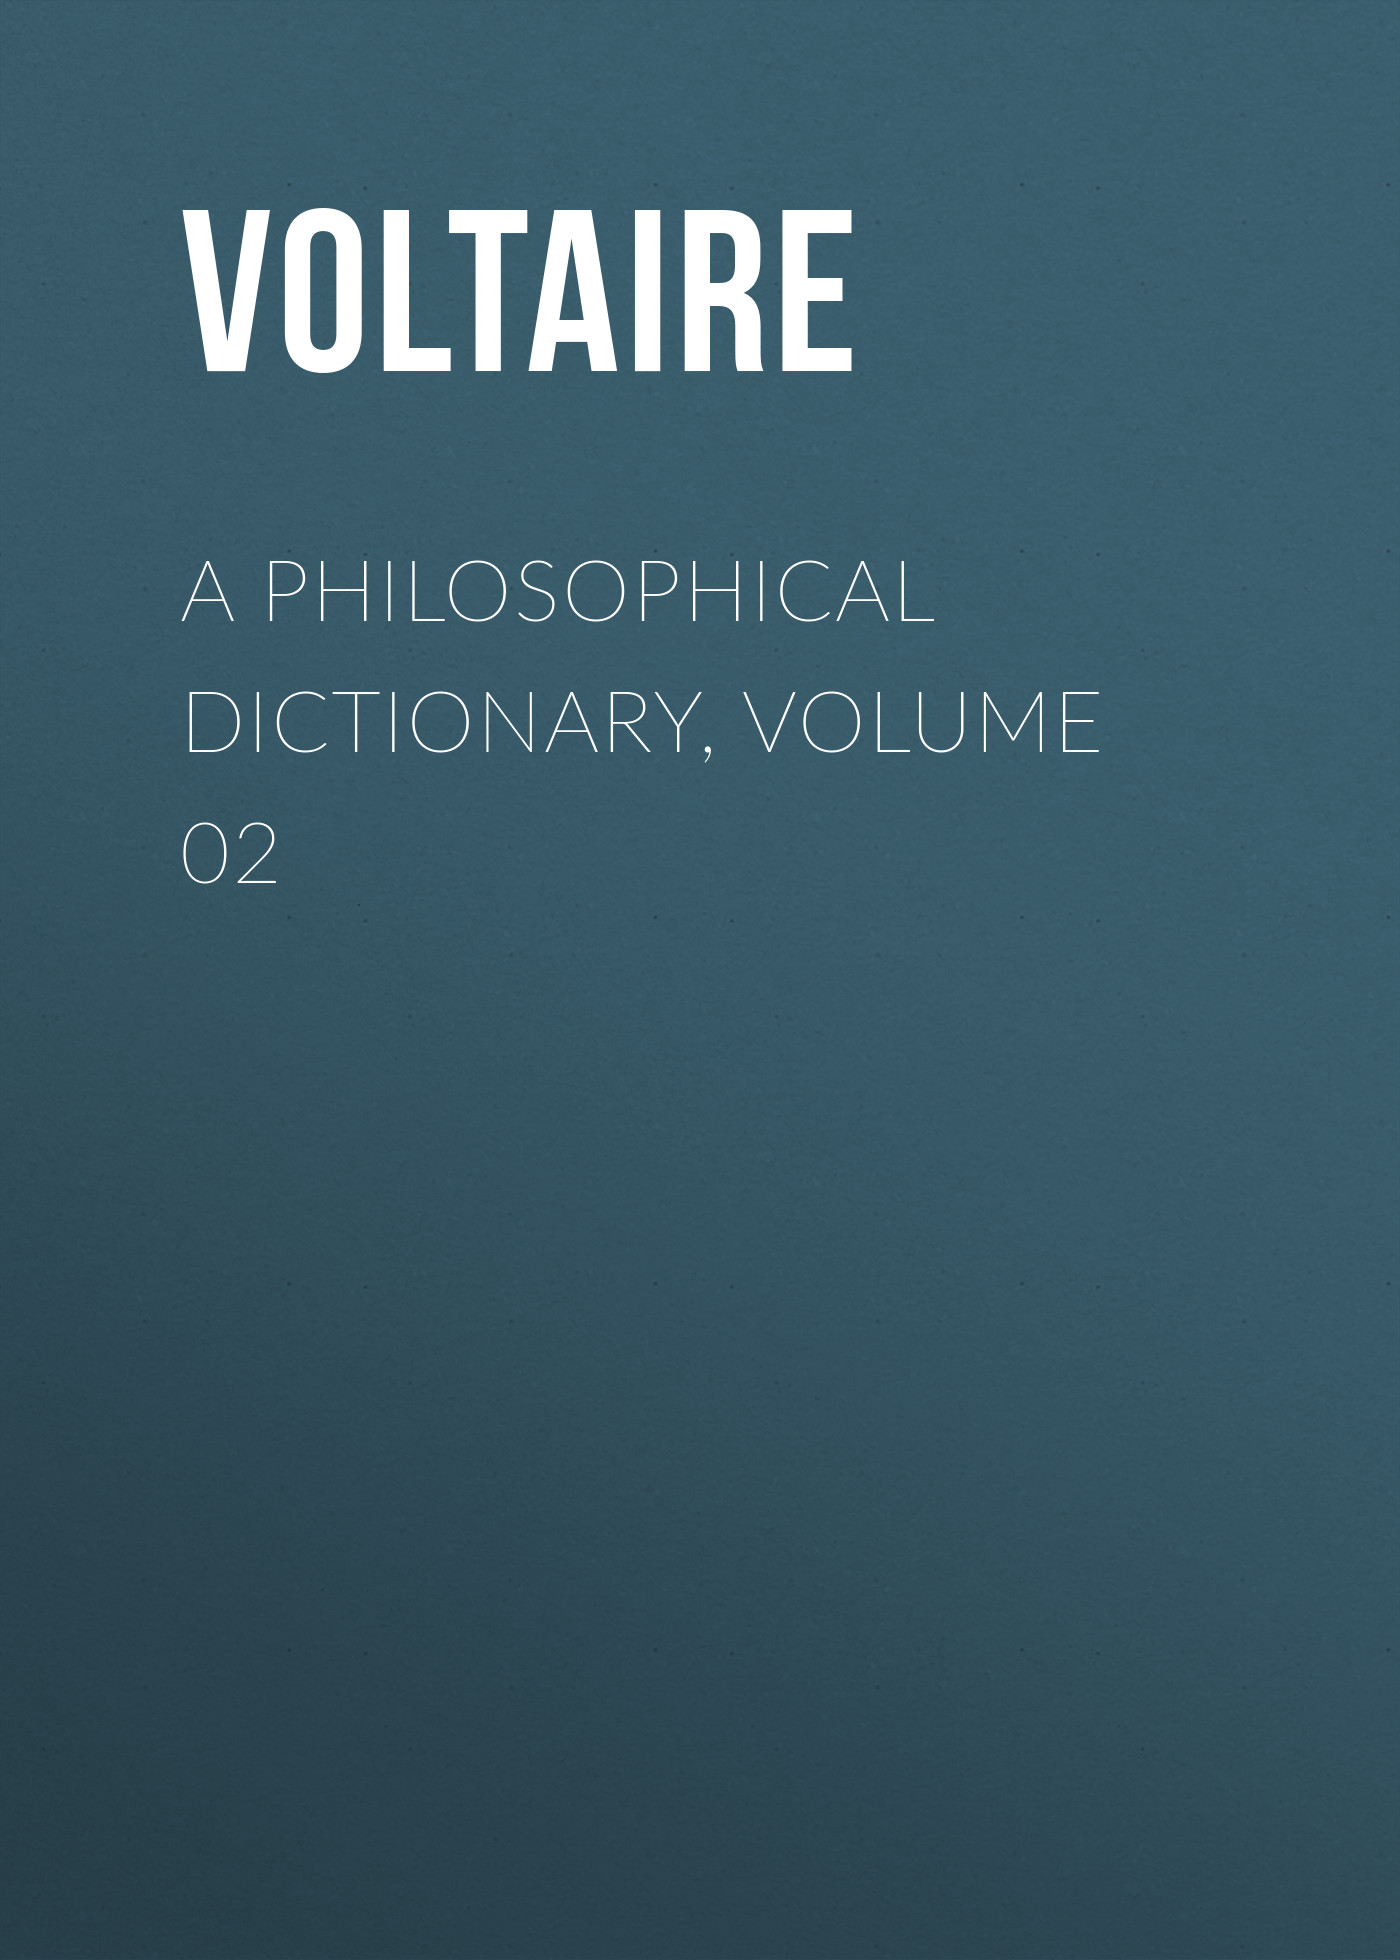 Книга A Philosophical Dictionary, Volume 02 из серии , созданная  Voltaire, может относится к жанру Философия, Литература 18 века, Зарубежная классика. Стоимость электронной книги A Philosophical Dictionary, Volume 02 с идентификатором 25560820 составляет 0 руб.